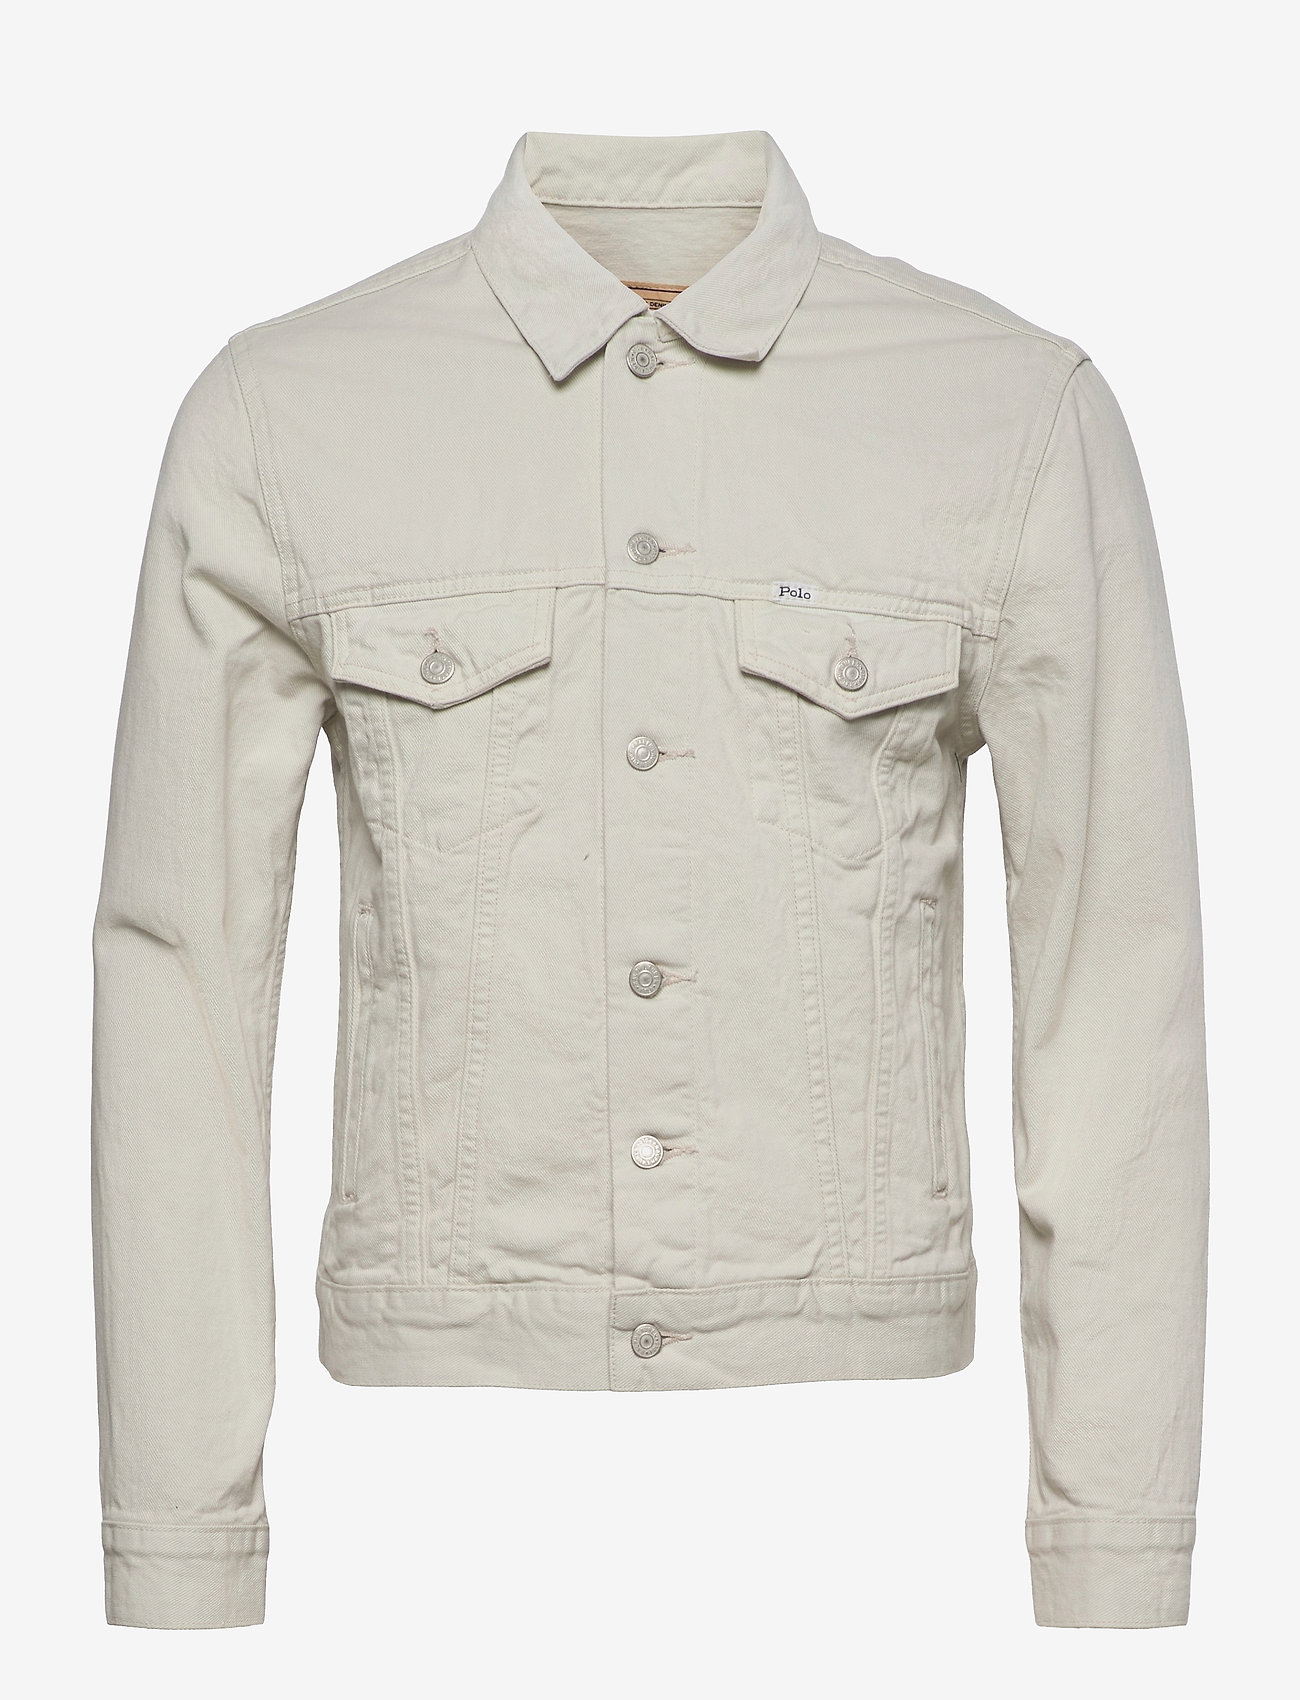 Polo Ralph Lauren Garment-dyed Denim Trucker Jacket - Light Jackets ...